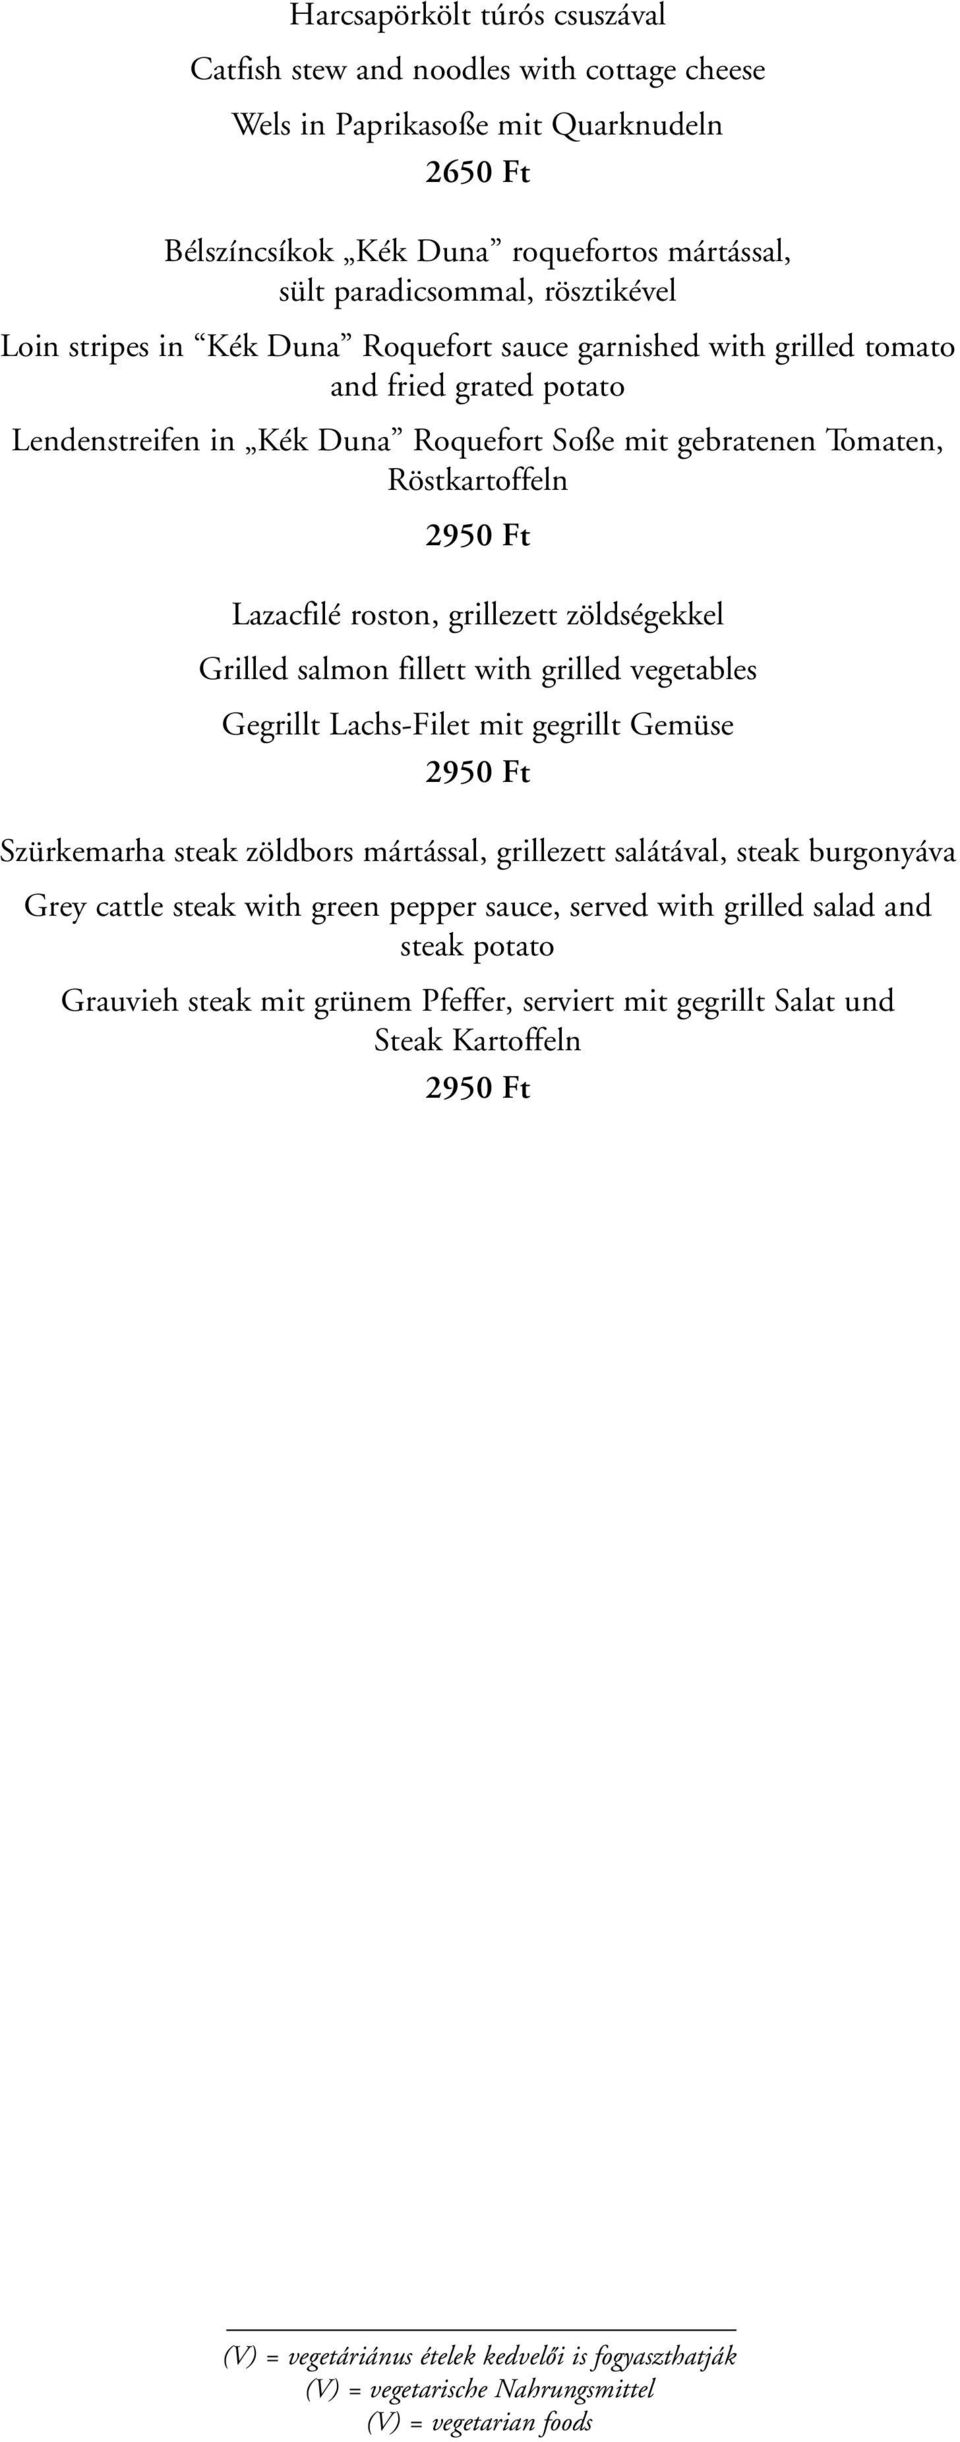 roston, grillezett zöldségekkel Grilled salmon fillett with grilled vegetables Gegrillt Lachs-Filet mit gegrillt Gemüse 2950 Ft Szürkemarha steak zöldbors mártással, grillezett salátával, steak